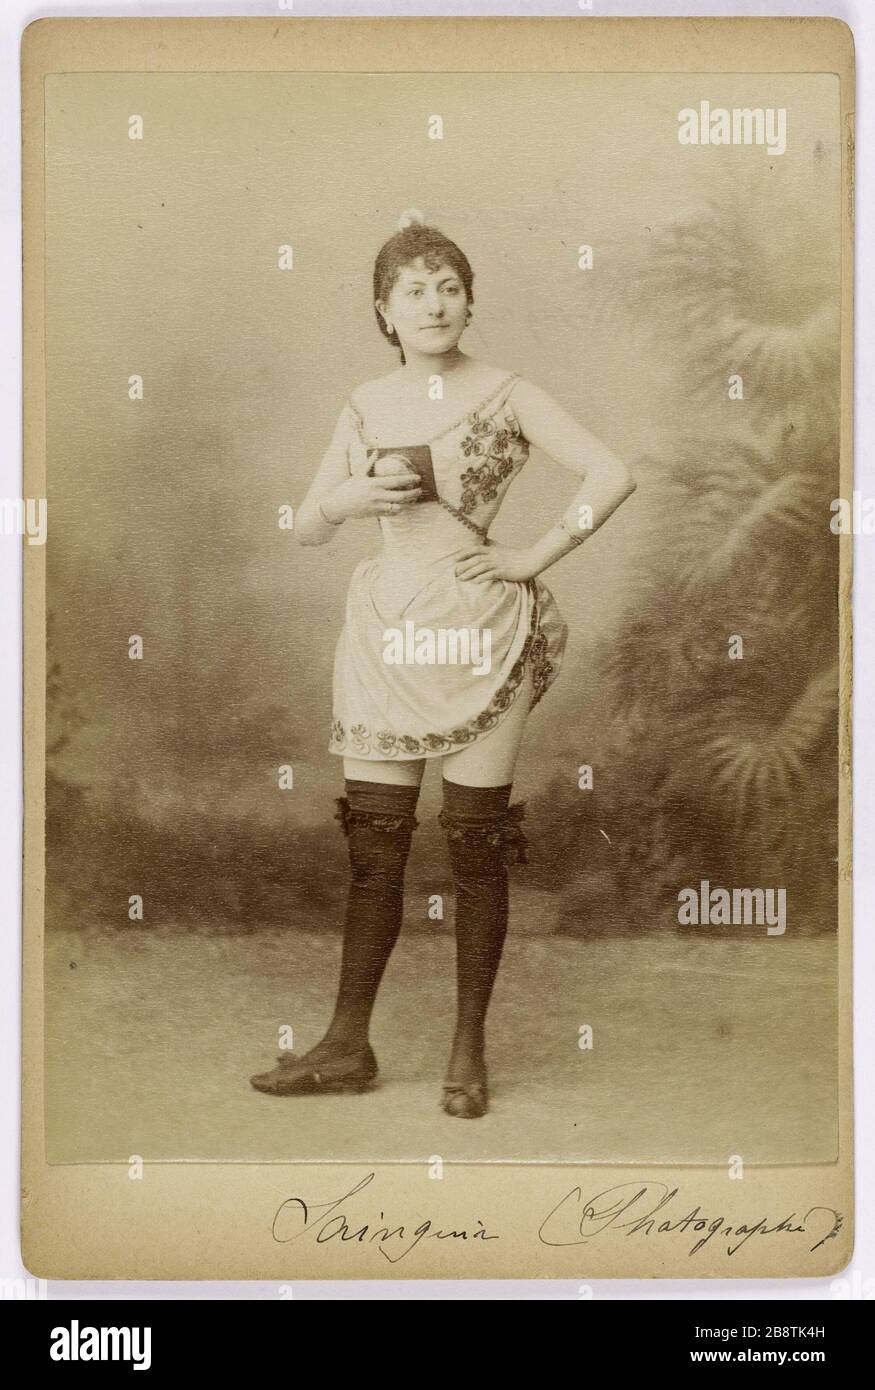 Portrait Sainguin disguised actress camera. Anonyme. Portrait de Sainguin, actrice déguisée en appareil photographique. Tirage sur papier albuminé. Paris, musée Carnavalet. Stock Photo